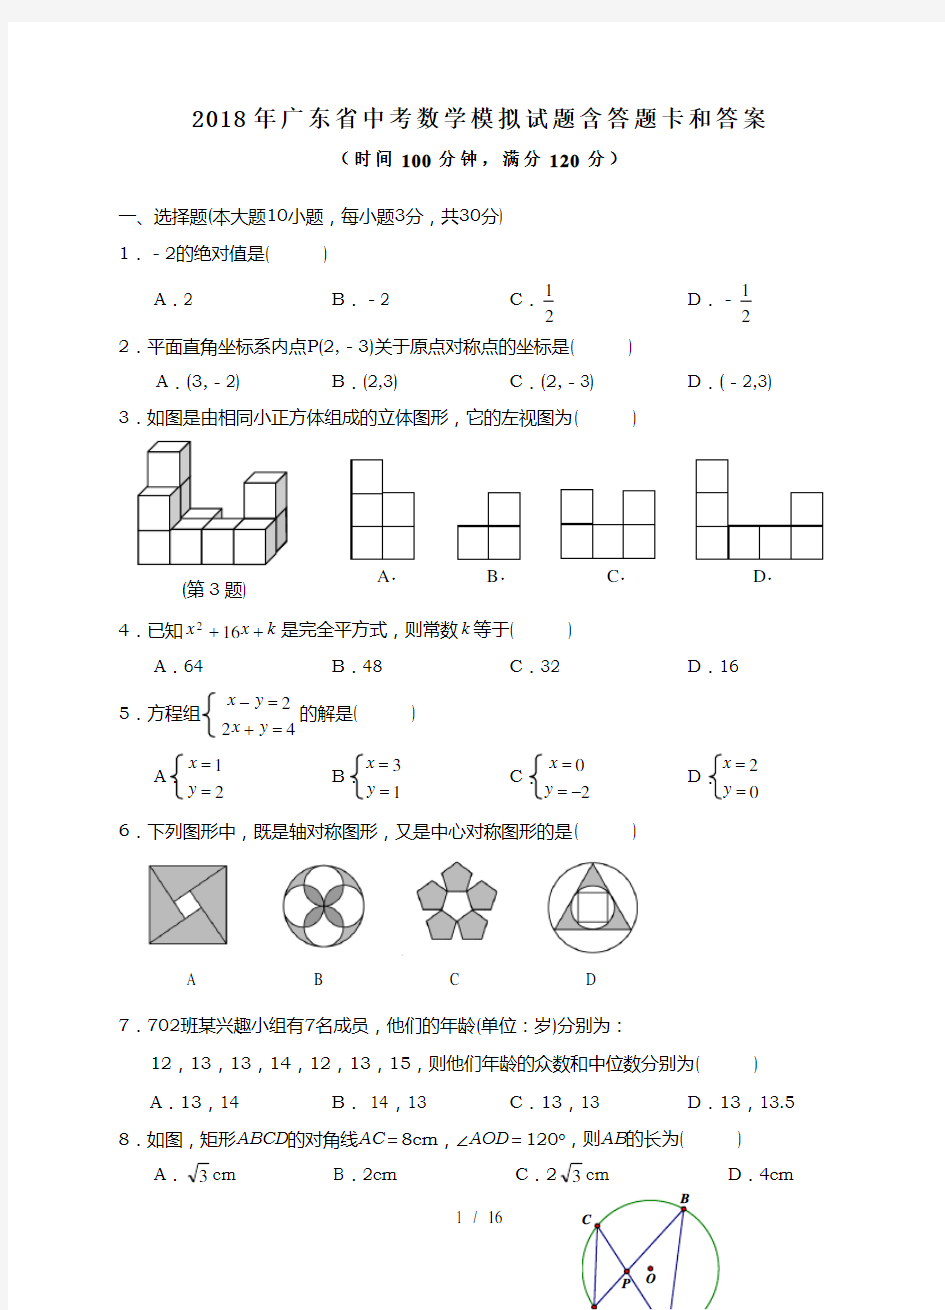 2018年广东省中考数学模拟试题及答题卡答案